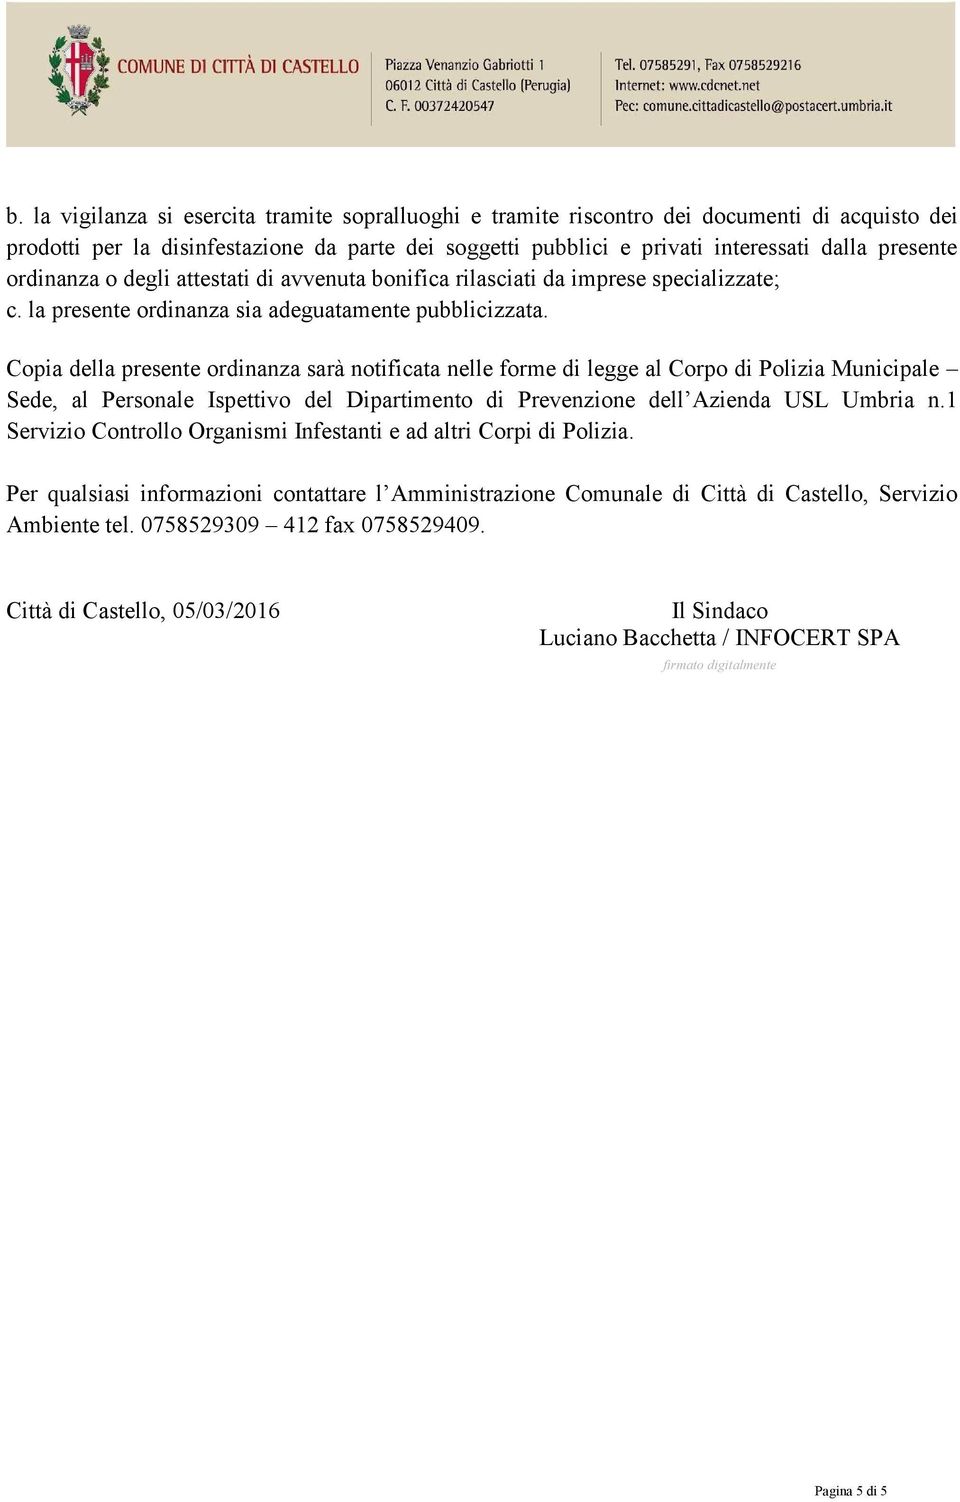 Copia della presente ordinanza sarà notificata nelle forme di legge al Corpo di Polizia Municipale Sede, al Personale Ispettivo del Dipartimento di Prevenzione dell Azienda USL Umbria n.